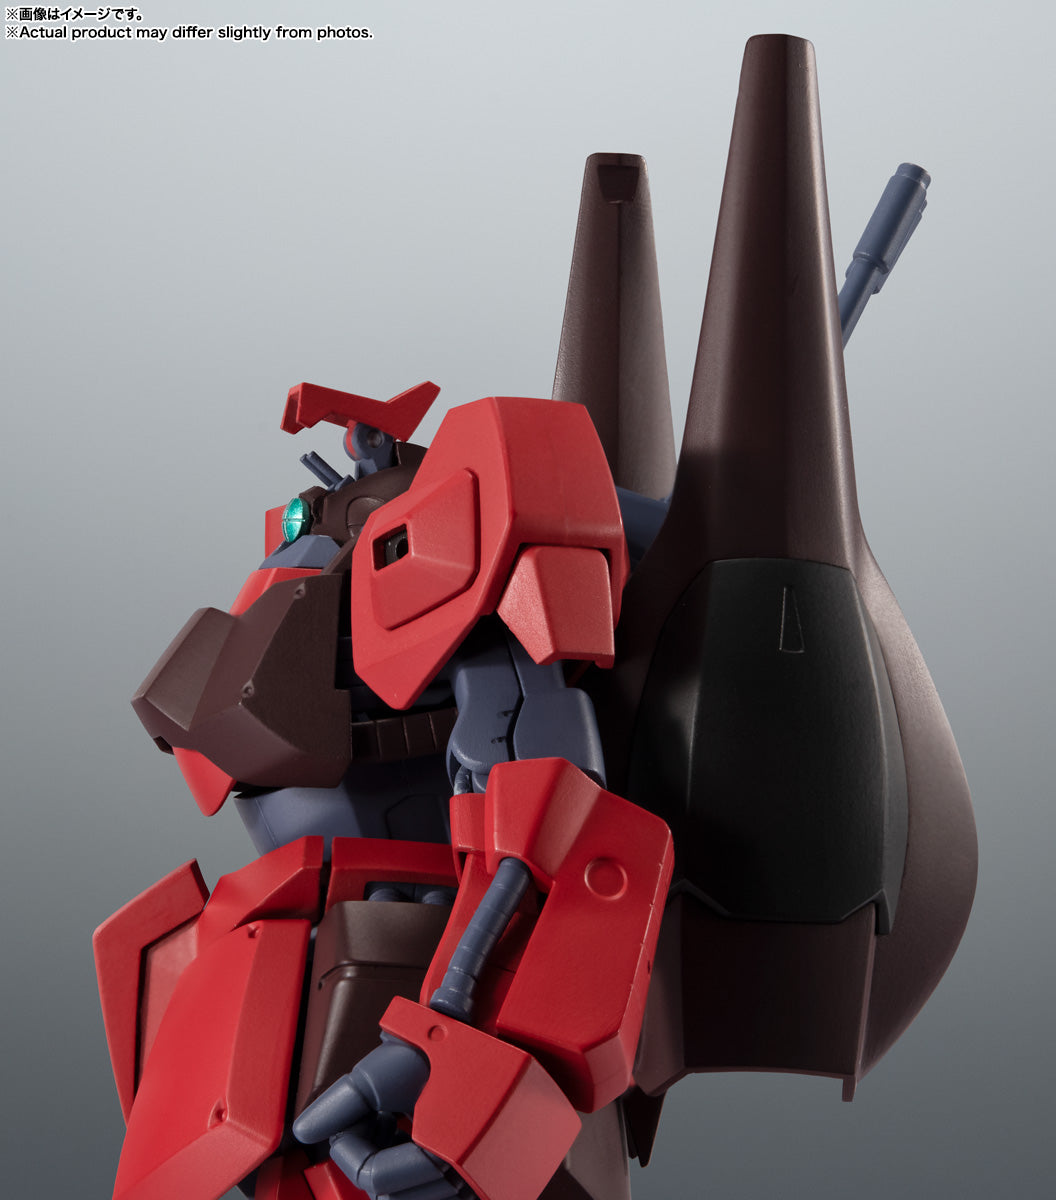 Robot Spirits Side MS "Mobile Suit Zeta Gundam" RMS-099 Rick Dias (Quattro Vageena Color) Ver. A.N.I.M.E., animota